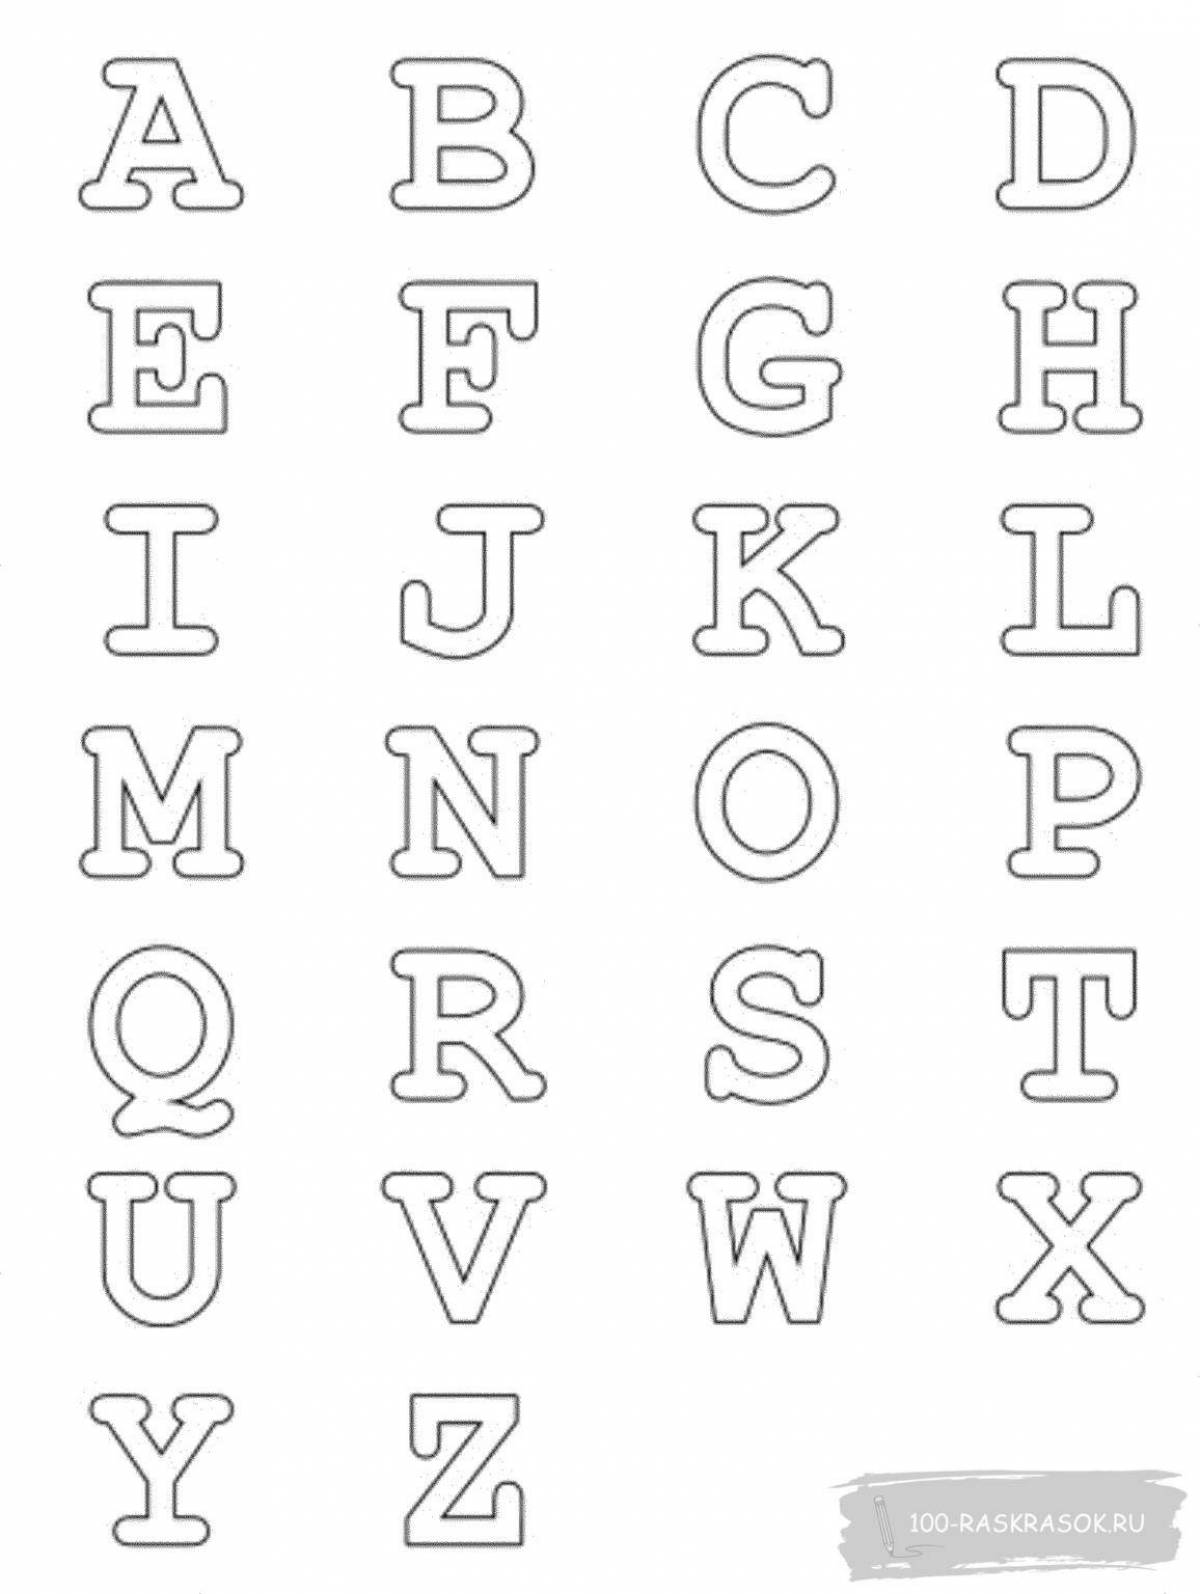 Увлекательная раскраска английского алфавита для детей